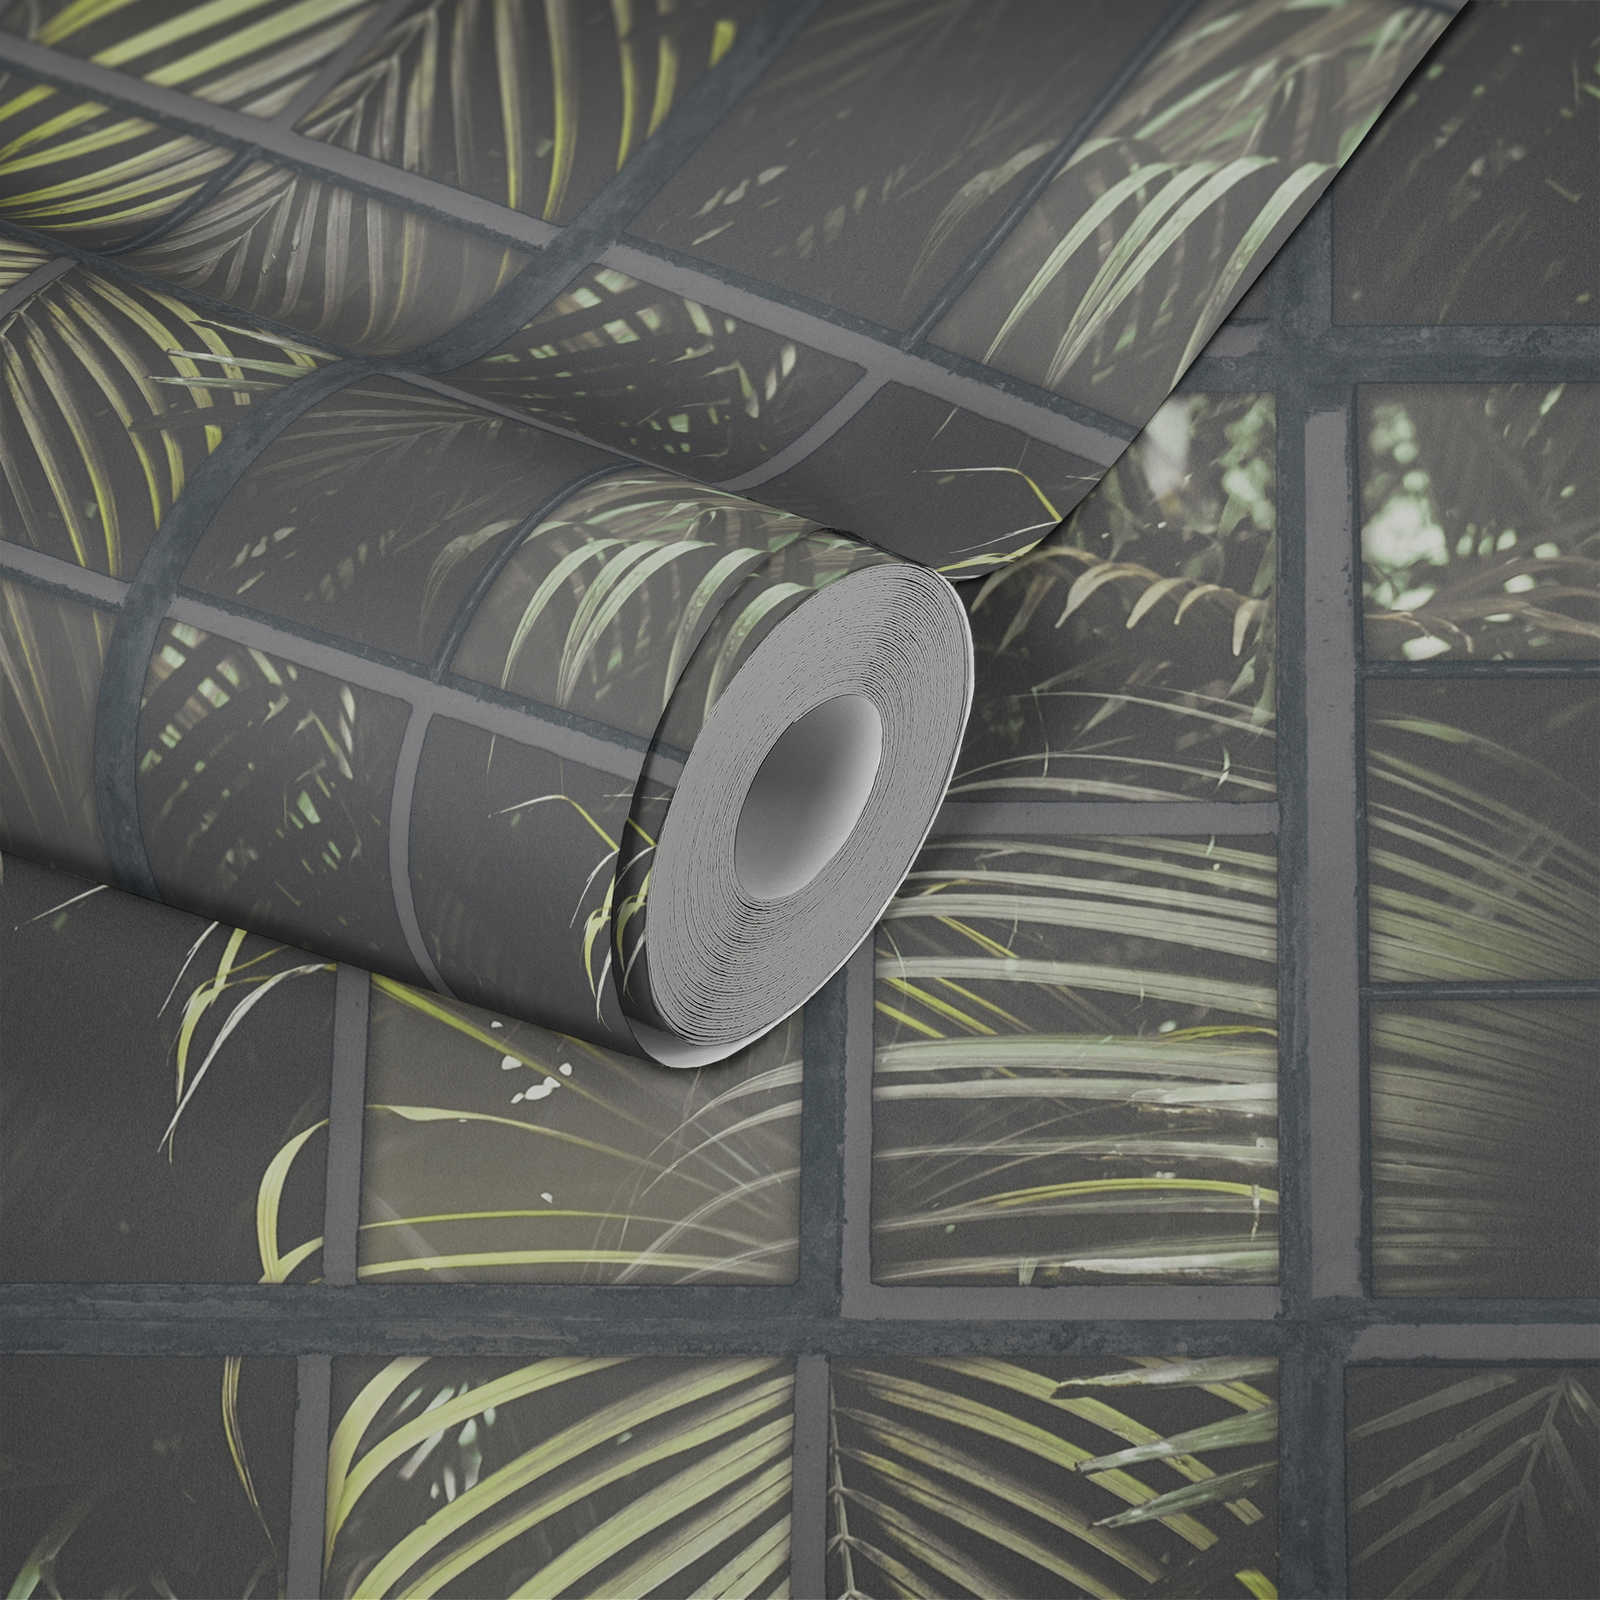             Papier peint Fenêtre Jungle Vue, effet 3D - Gris, vert, noir
        